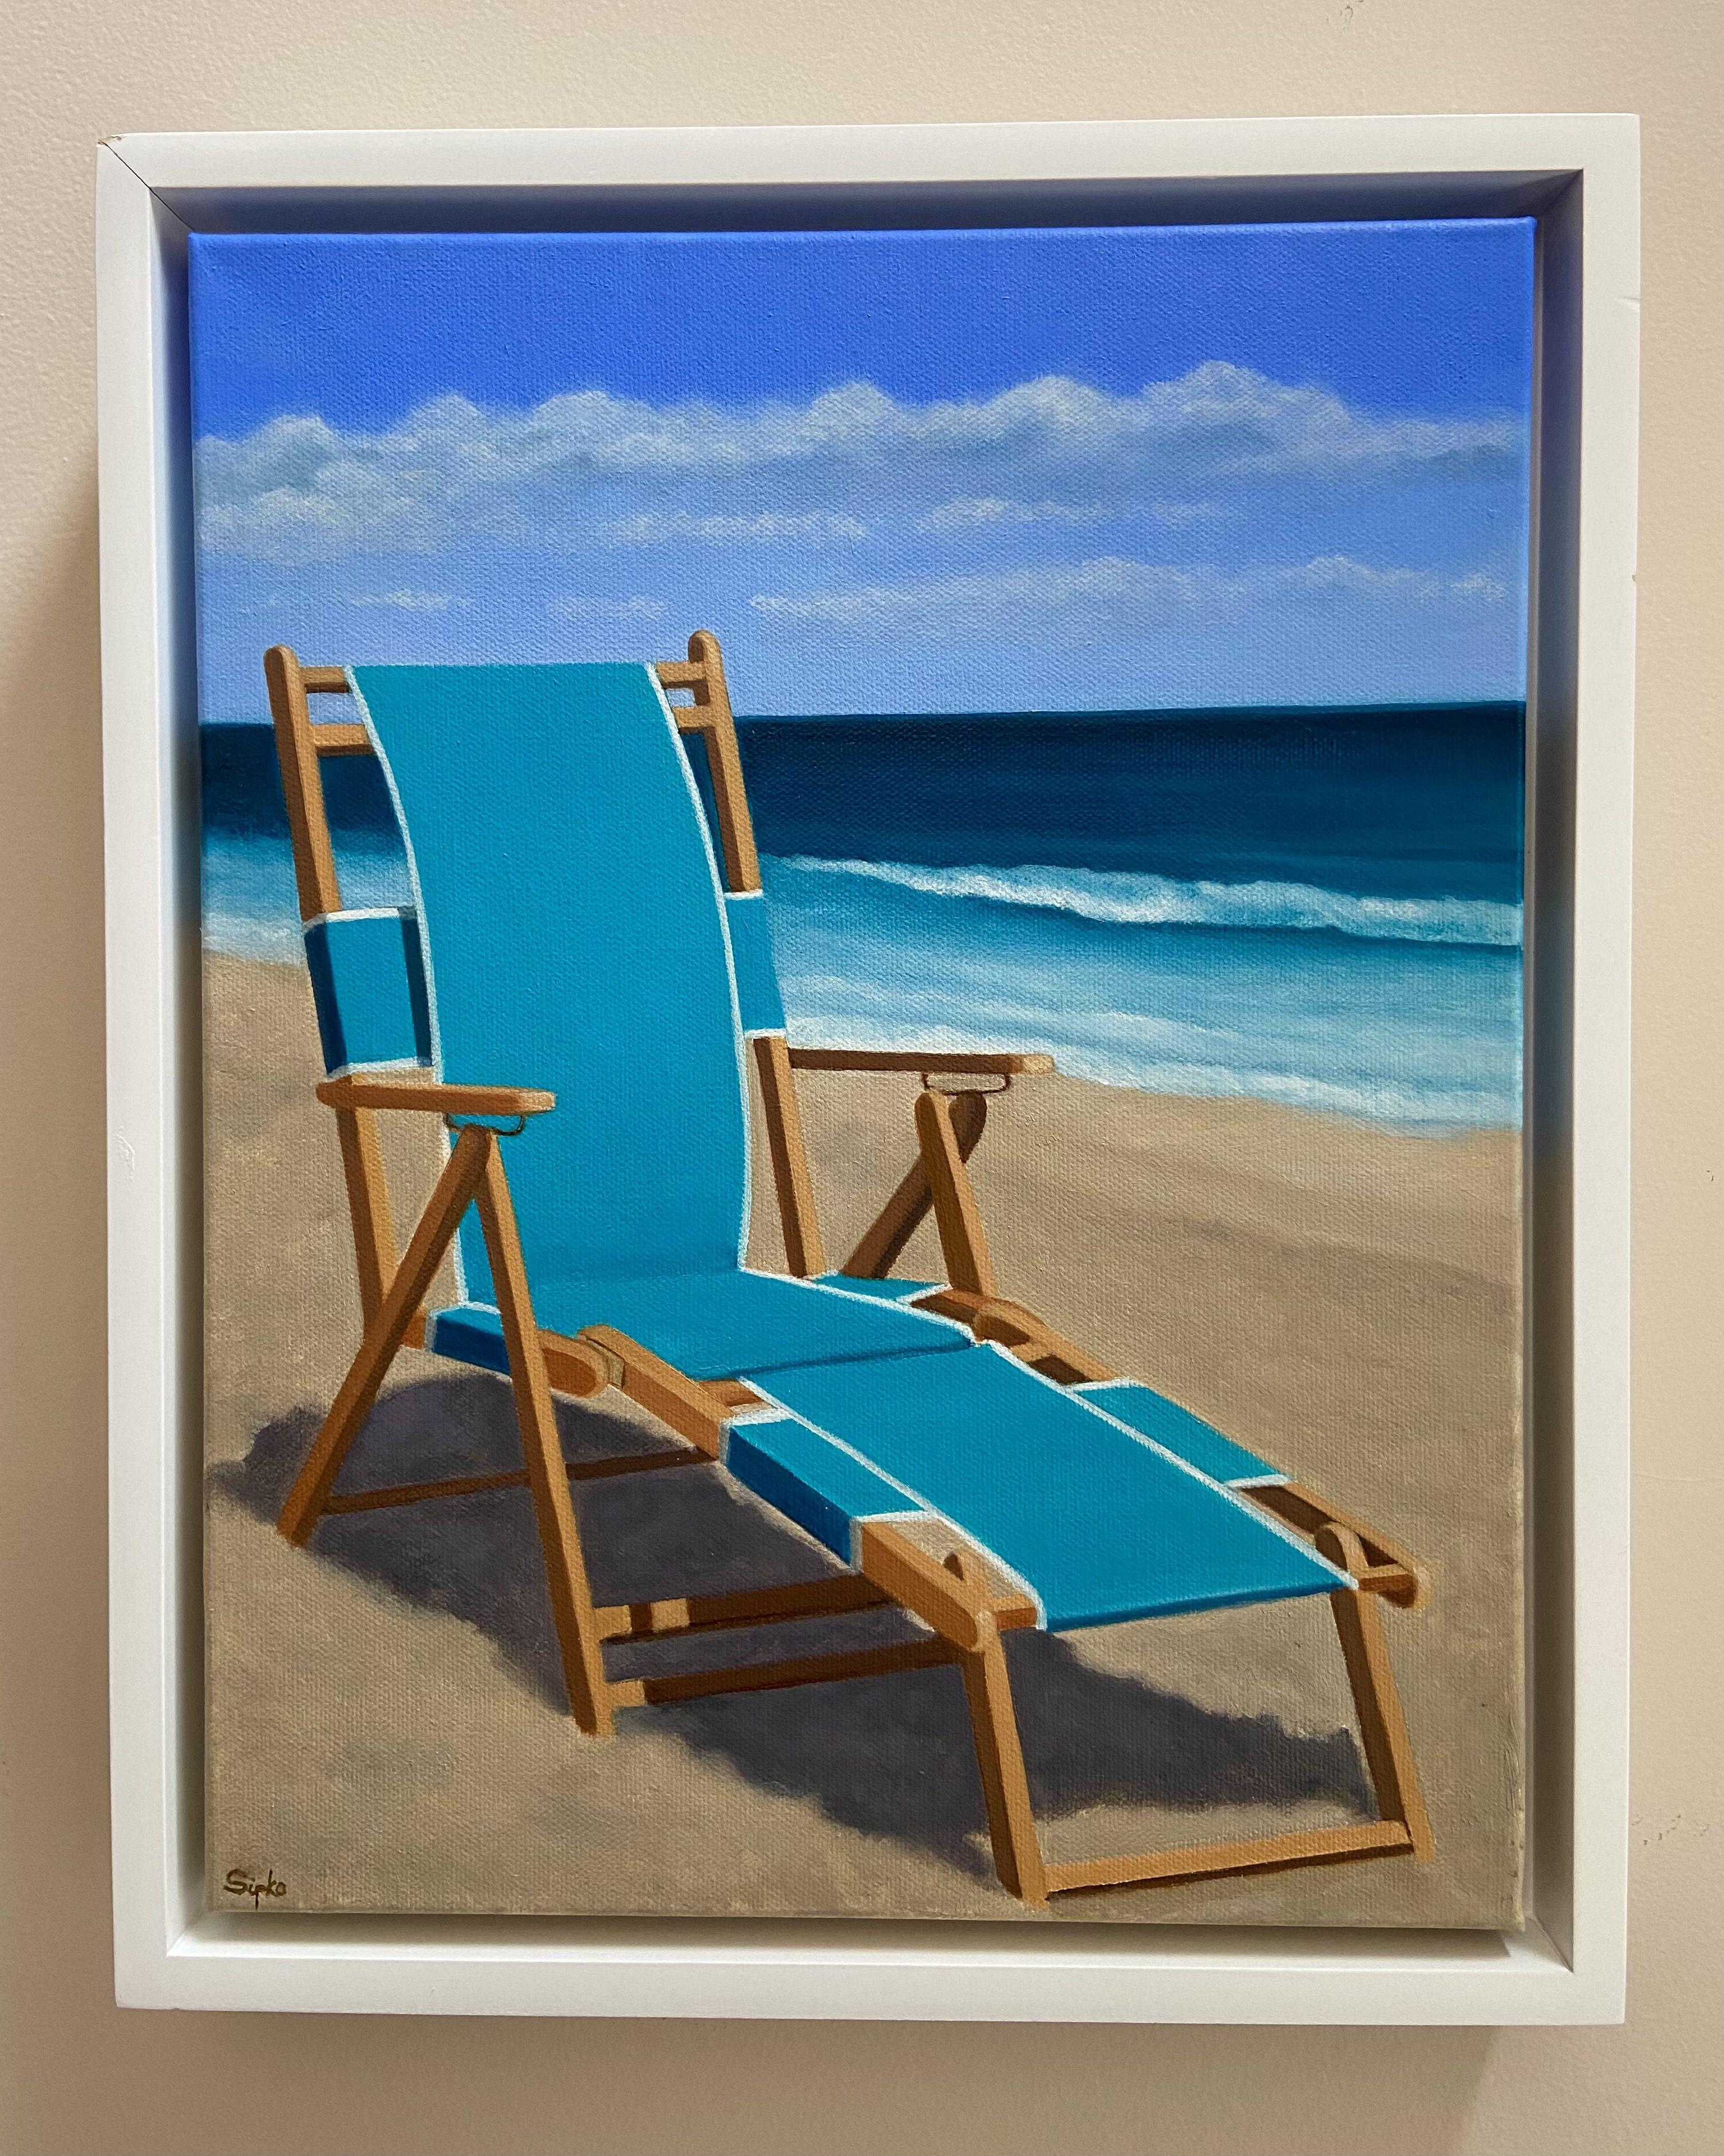 Journée de plage, peinture, huile sur toile - Contemporain Painting par David Sipko